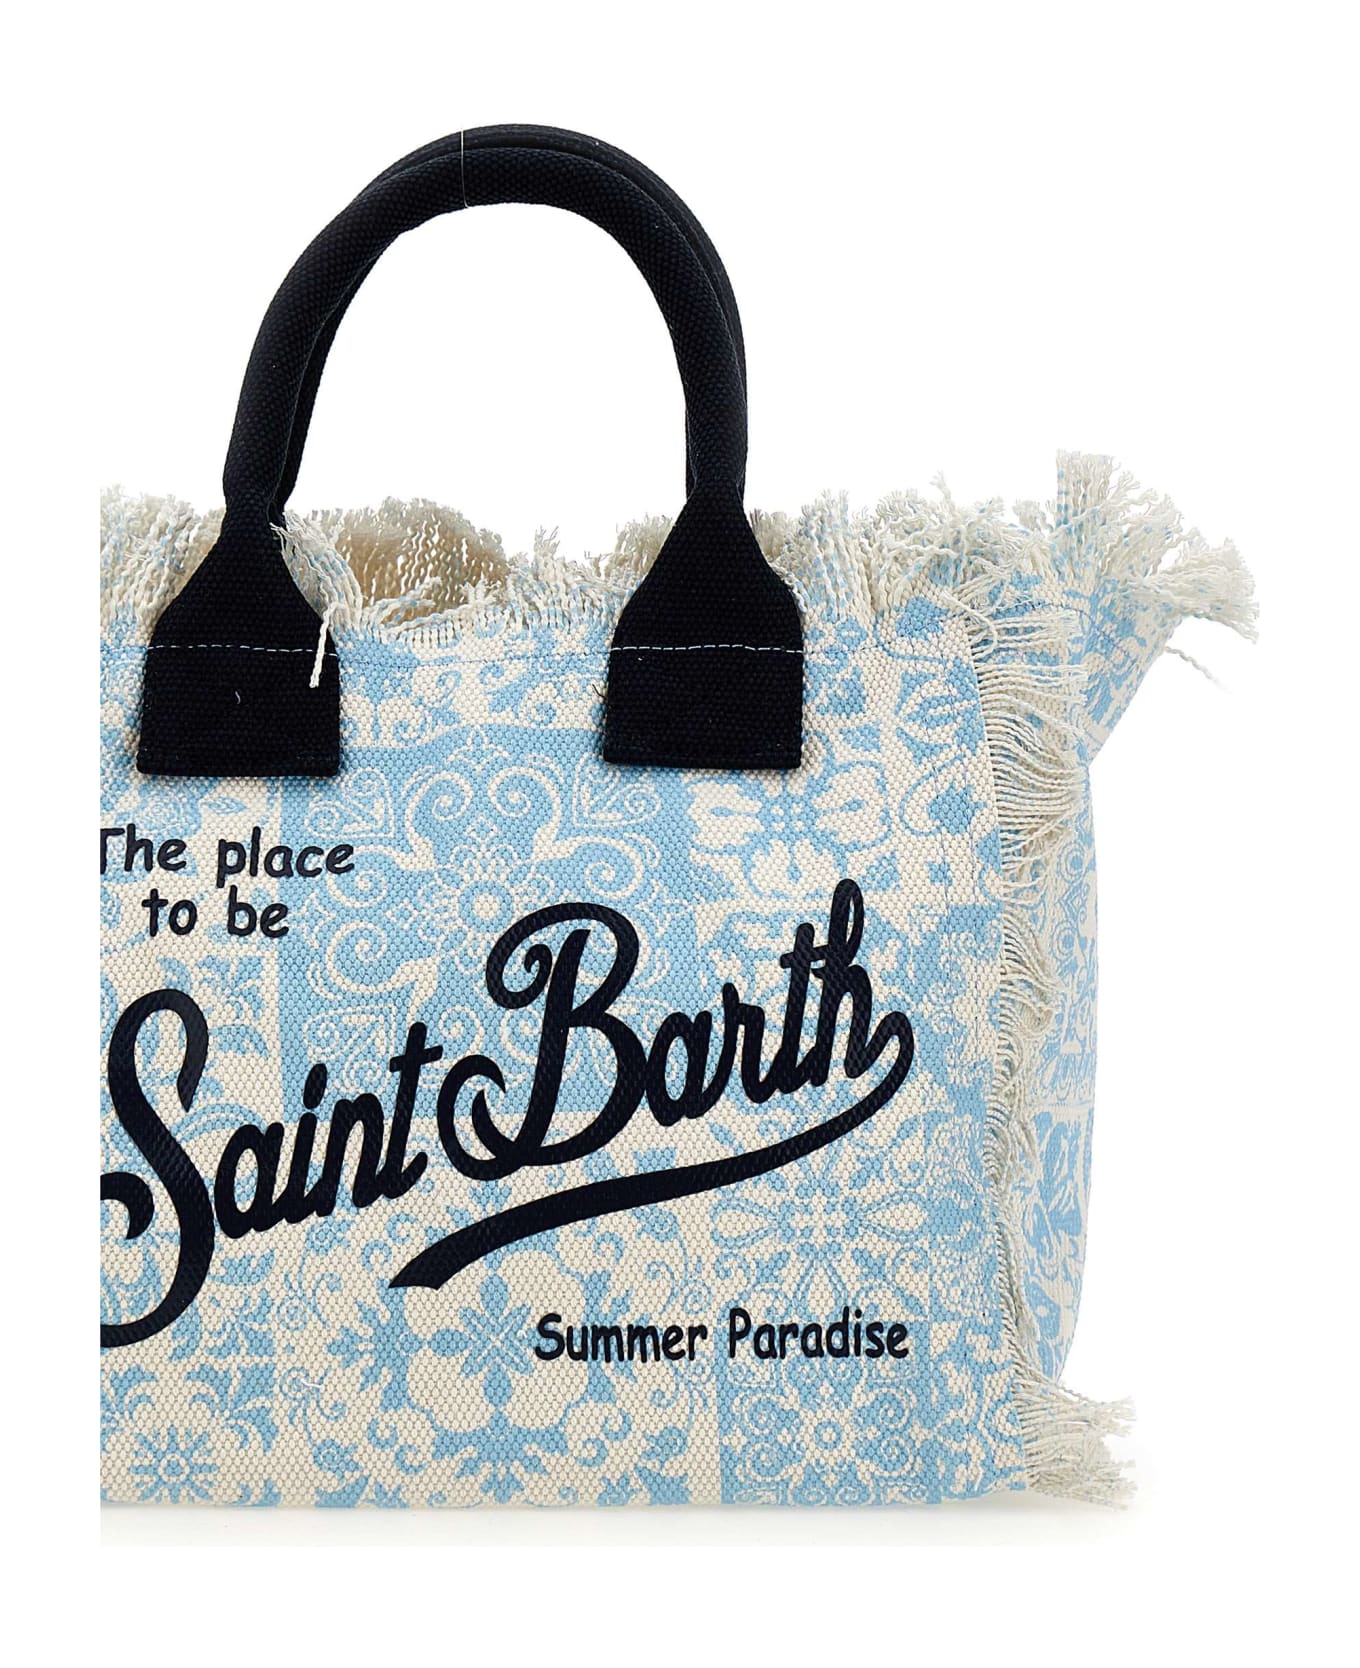 MC2 Saint Barth "colette" Bag - LIGHT BLUE